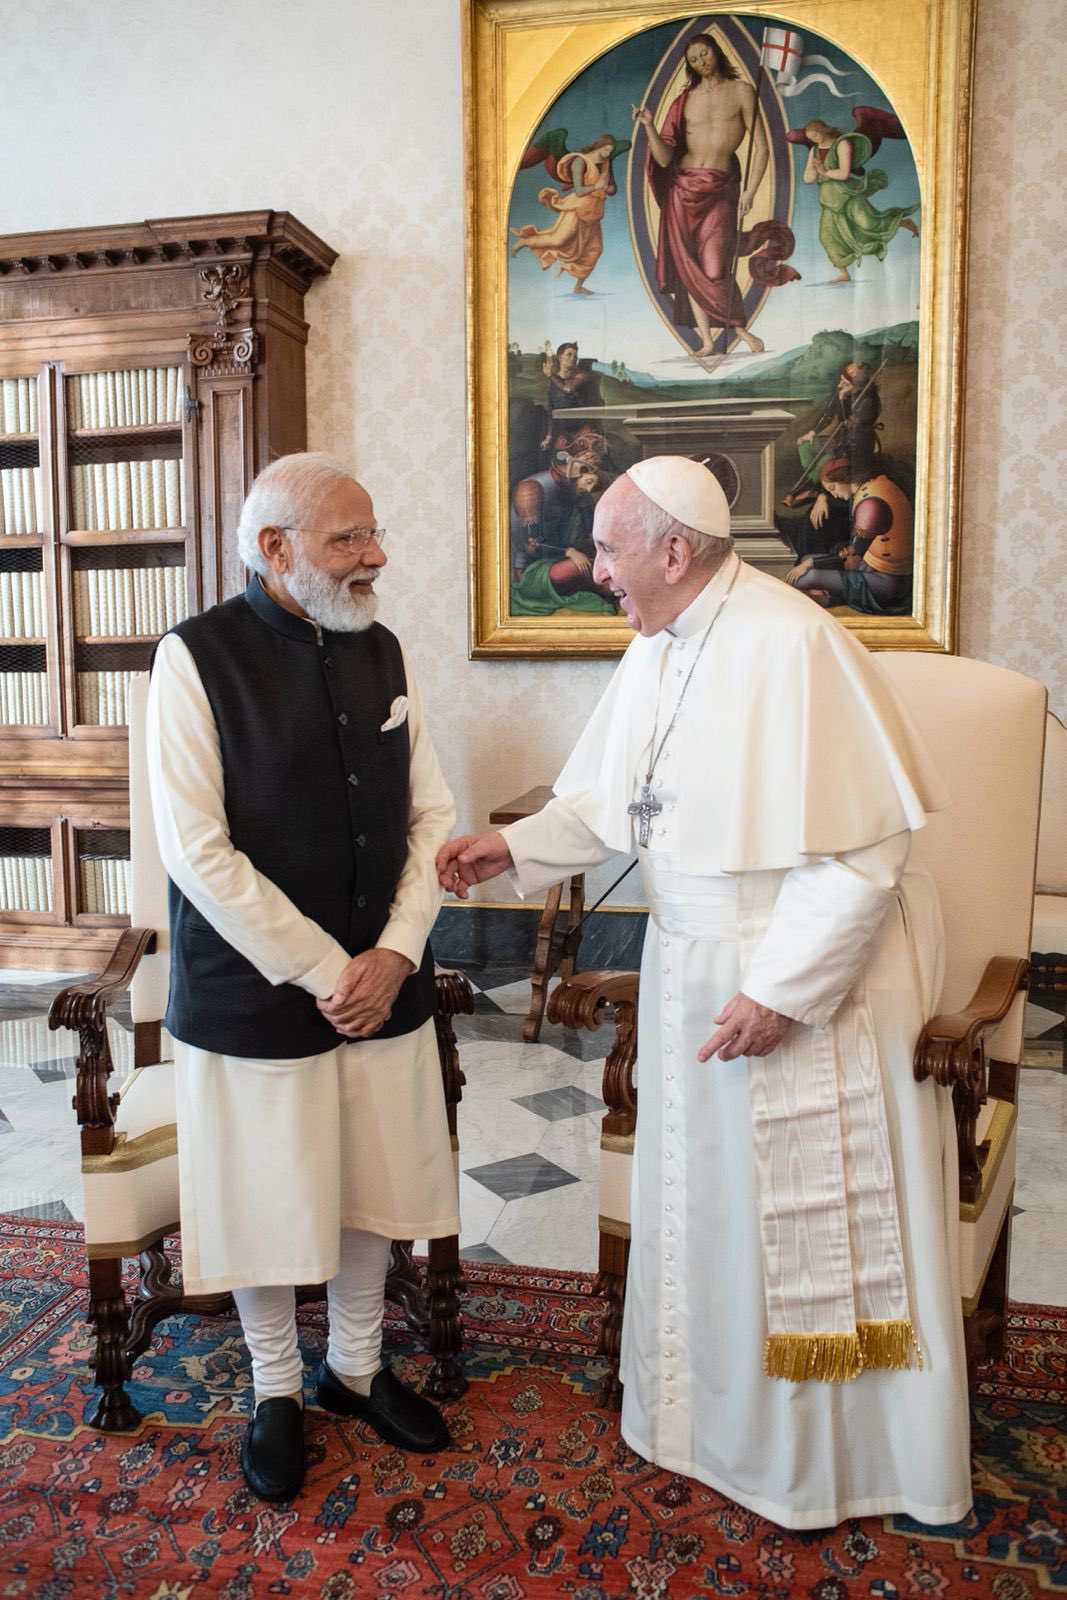  प्रधानमंत्री नरेंद्र मोदी ने वैटिकन में पोप फ्रांसिस के साथ मुलाकात की तस्वीरें साझा करते हुए कहा, 'पोप फ्रांसिस के साथ गर्मजोशी भरी मुलाकात हुई, जिसमें उनके साथ विविध विषयों पर चर्चा की और भारत आने का भी न्योता दिया'